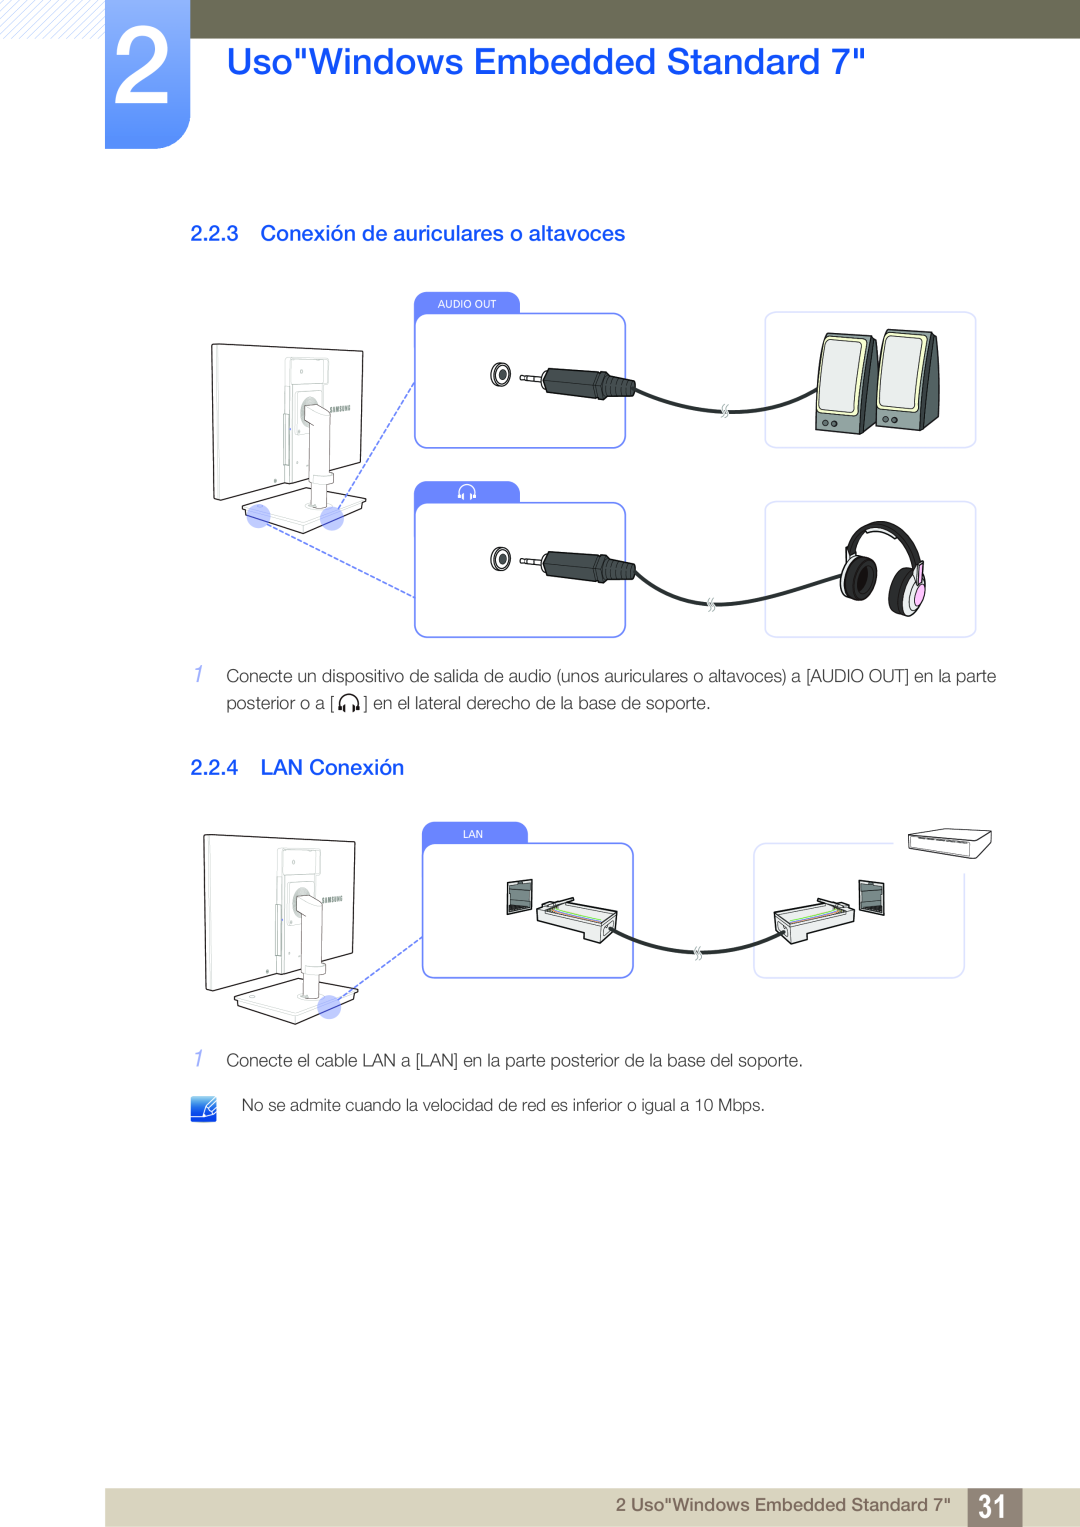 Samsung LF19TSWTBDN/EN, LF24TSWTBDN/EN Conexión de auriculares o altavoces, LAN Conexión, UsoWindows Embedded Standard 